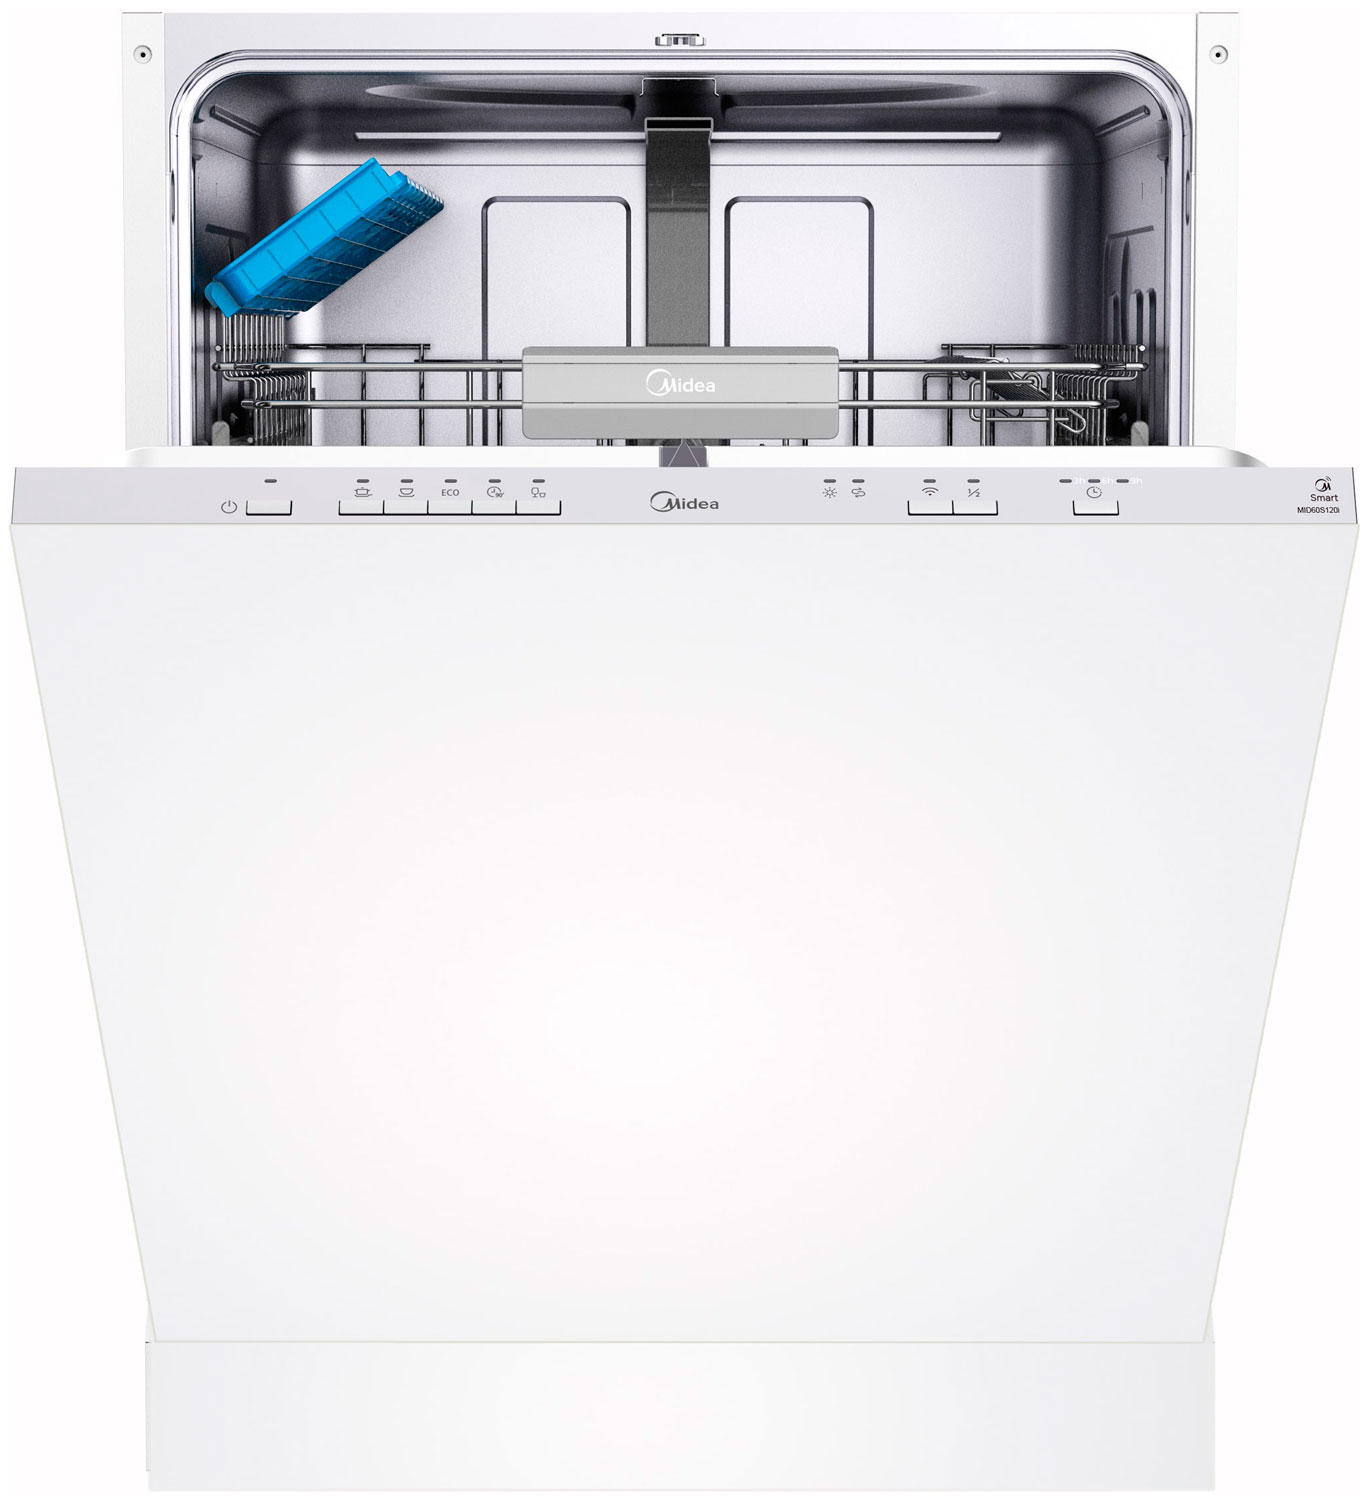 Встраиваемая посудомоечная машина Midea MID60S120i встраиваемая посудомоечная машина midea mid45s450i